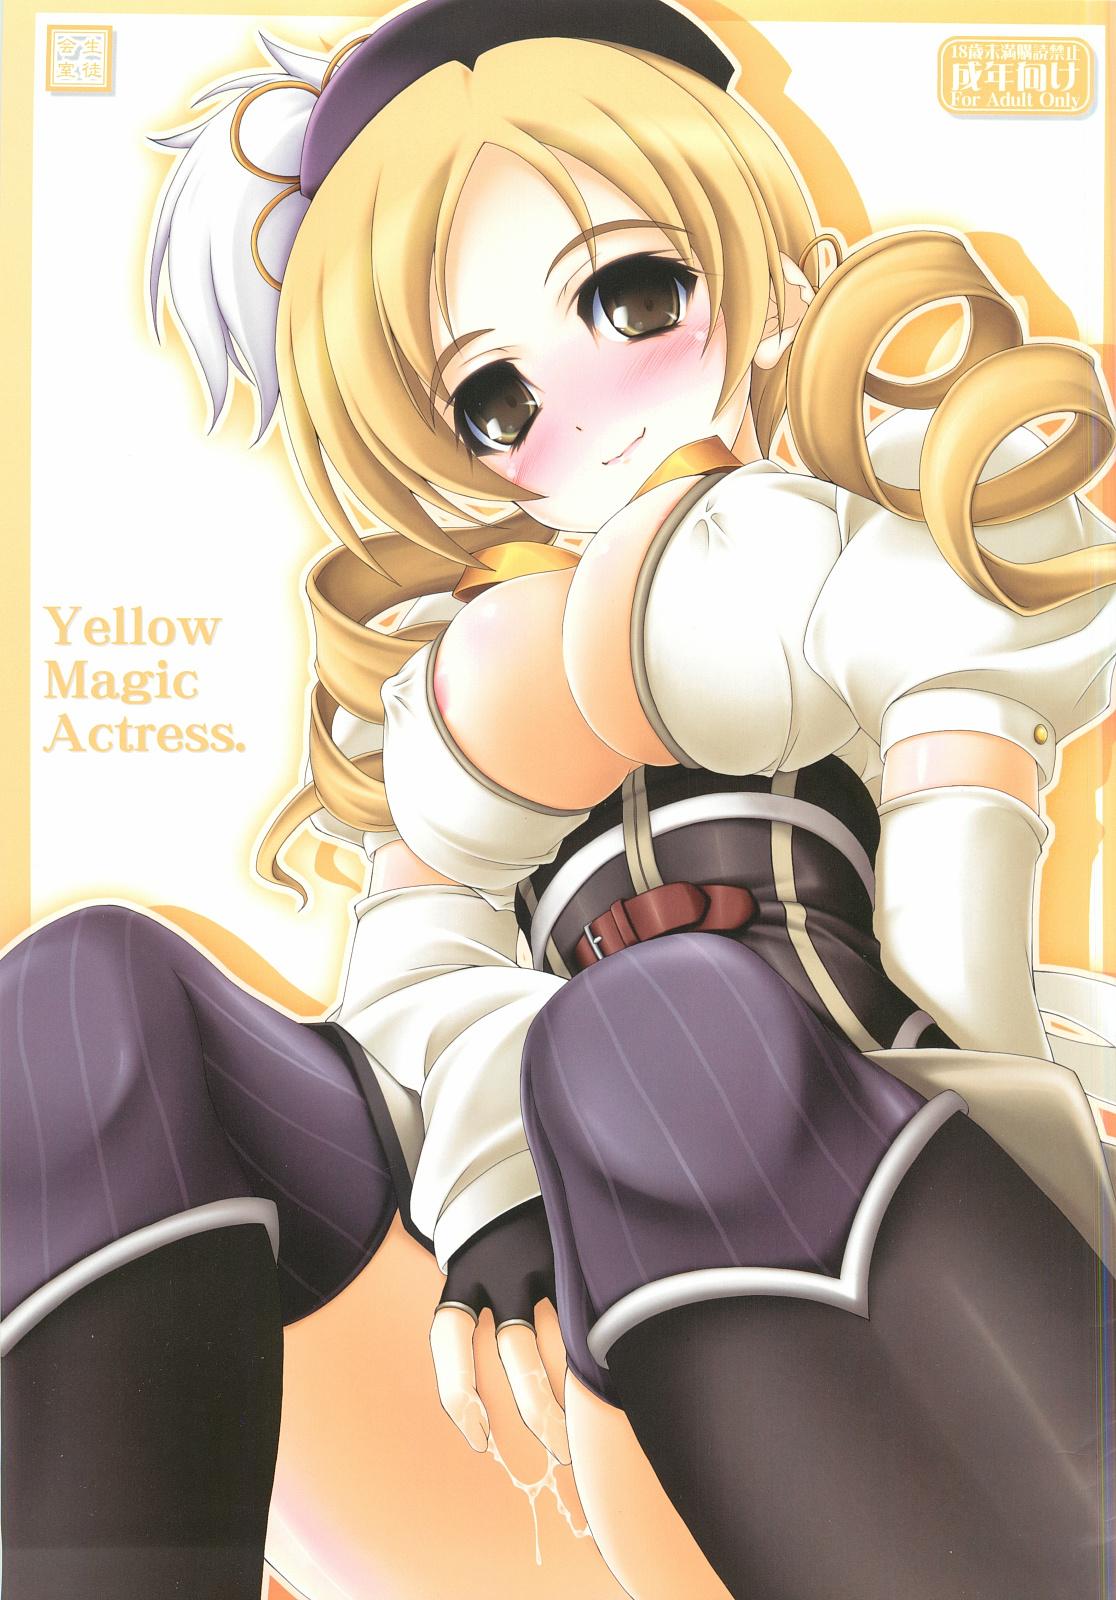 Yellow Magic Actress 0